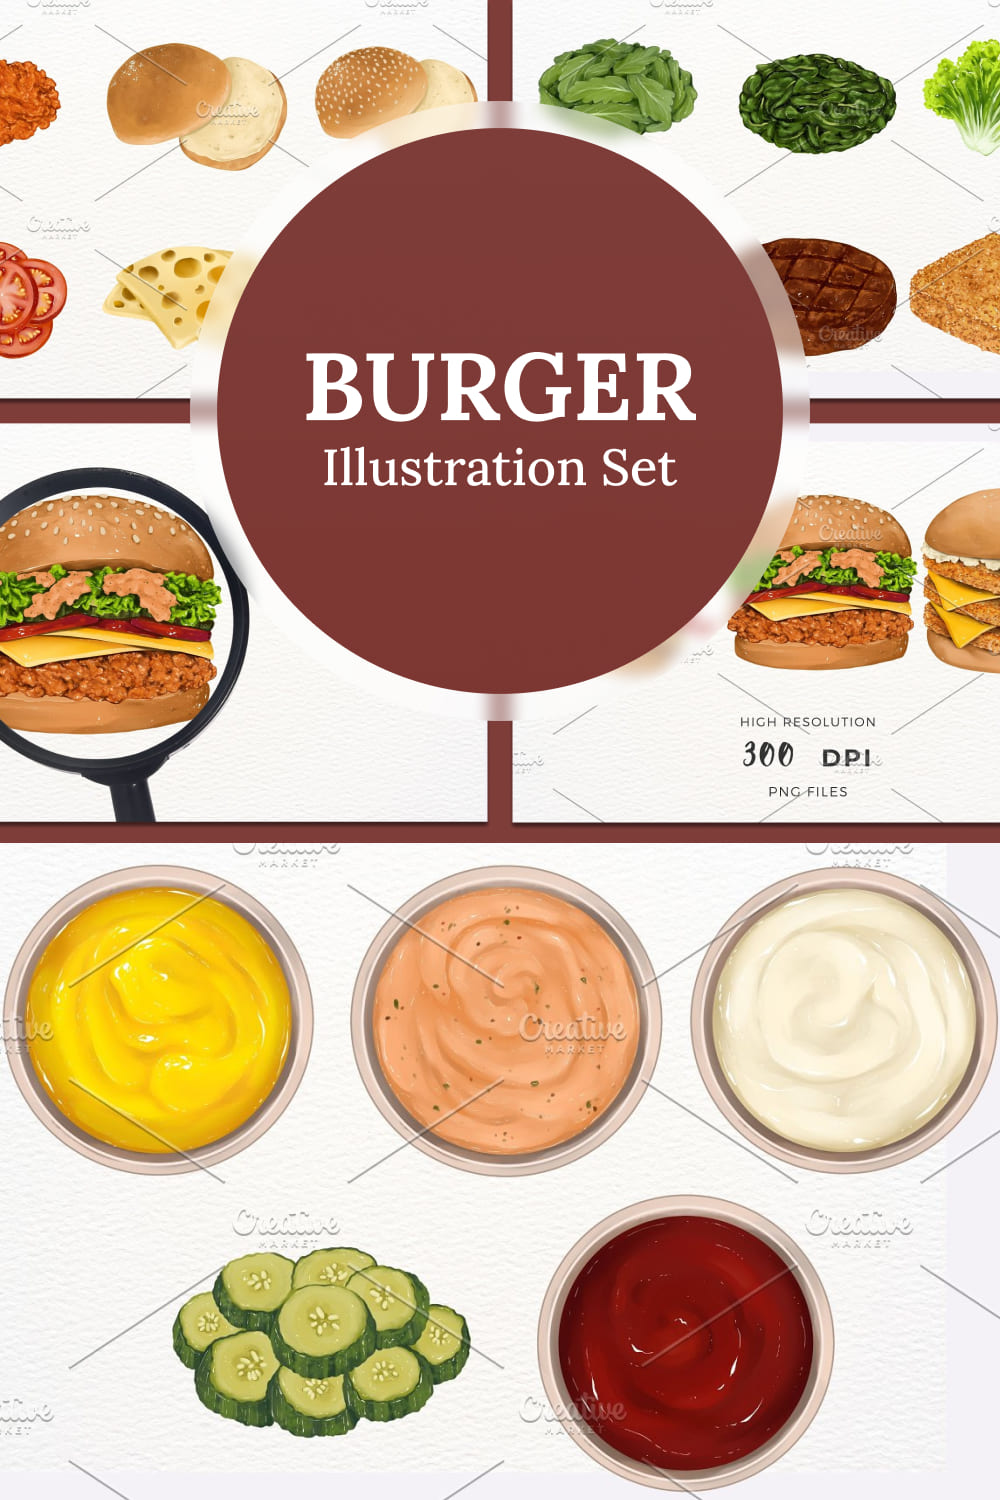 Burger illustration set - pinterest image preview.